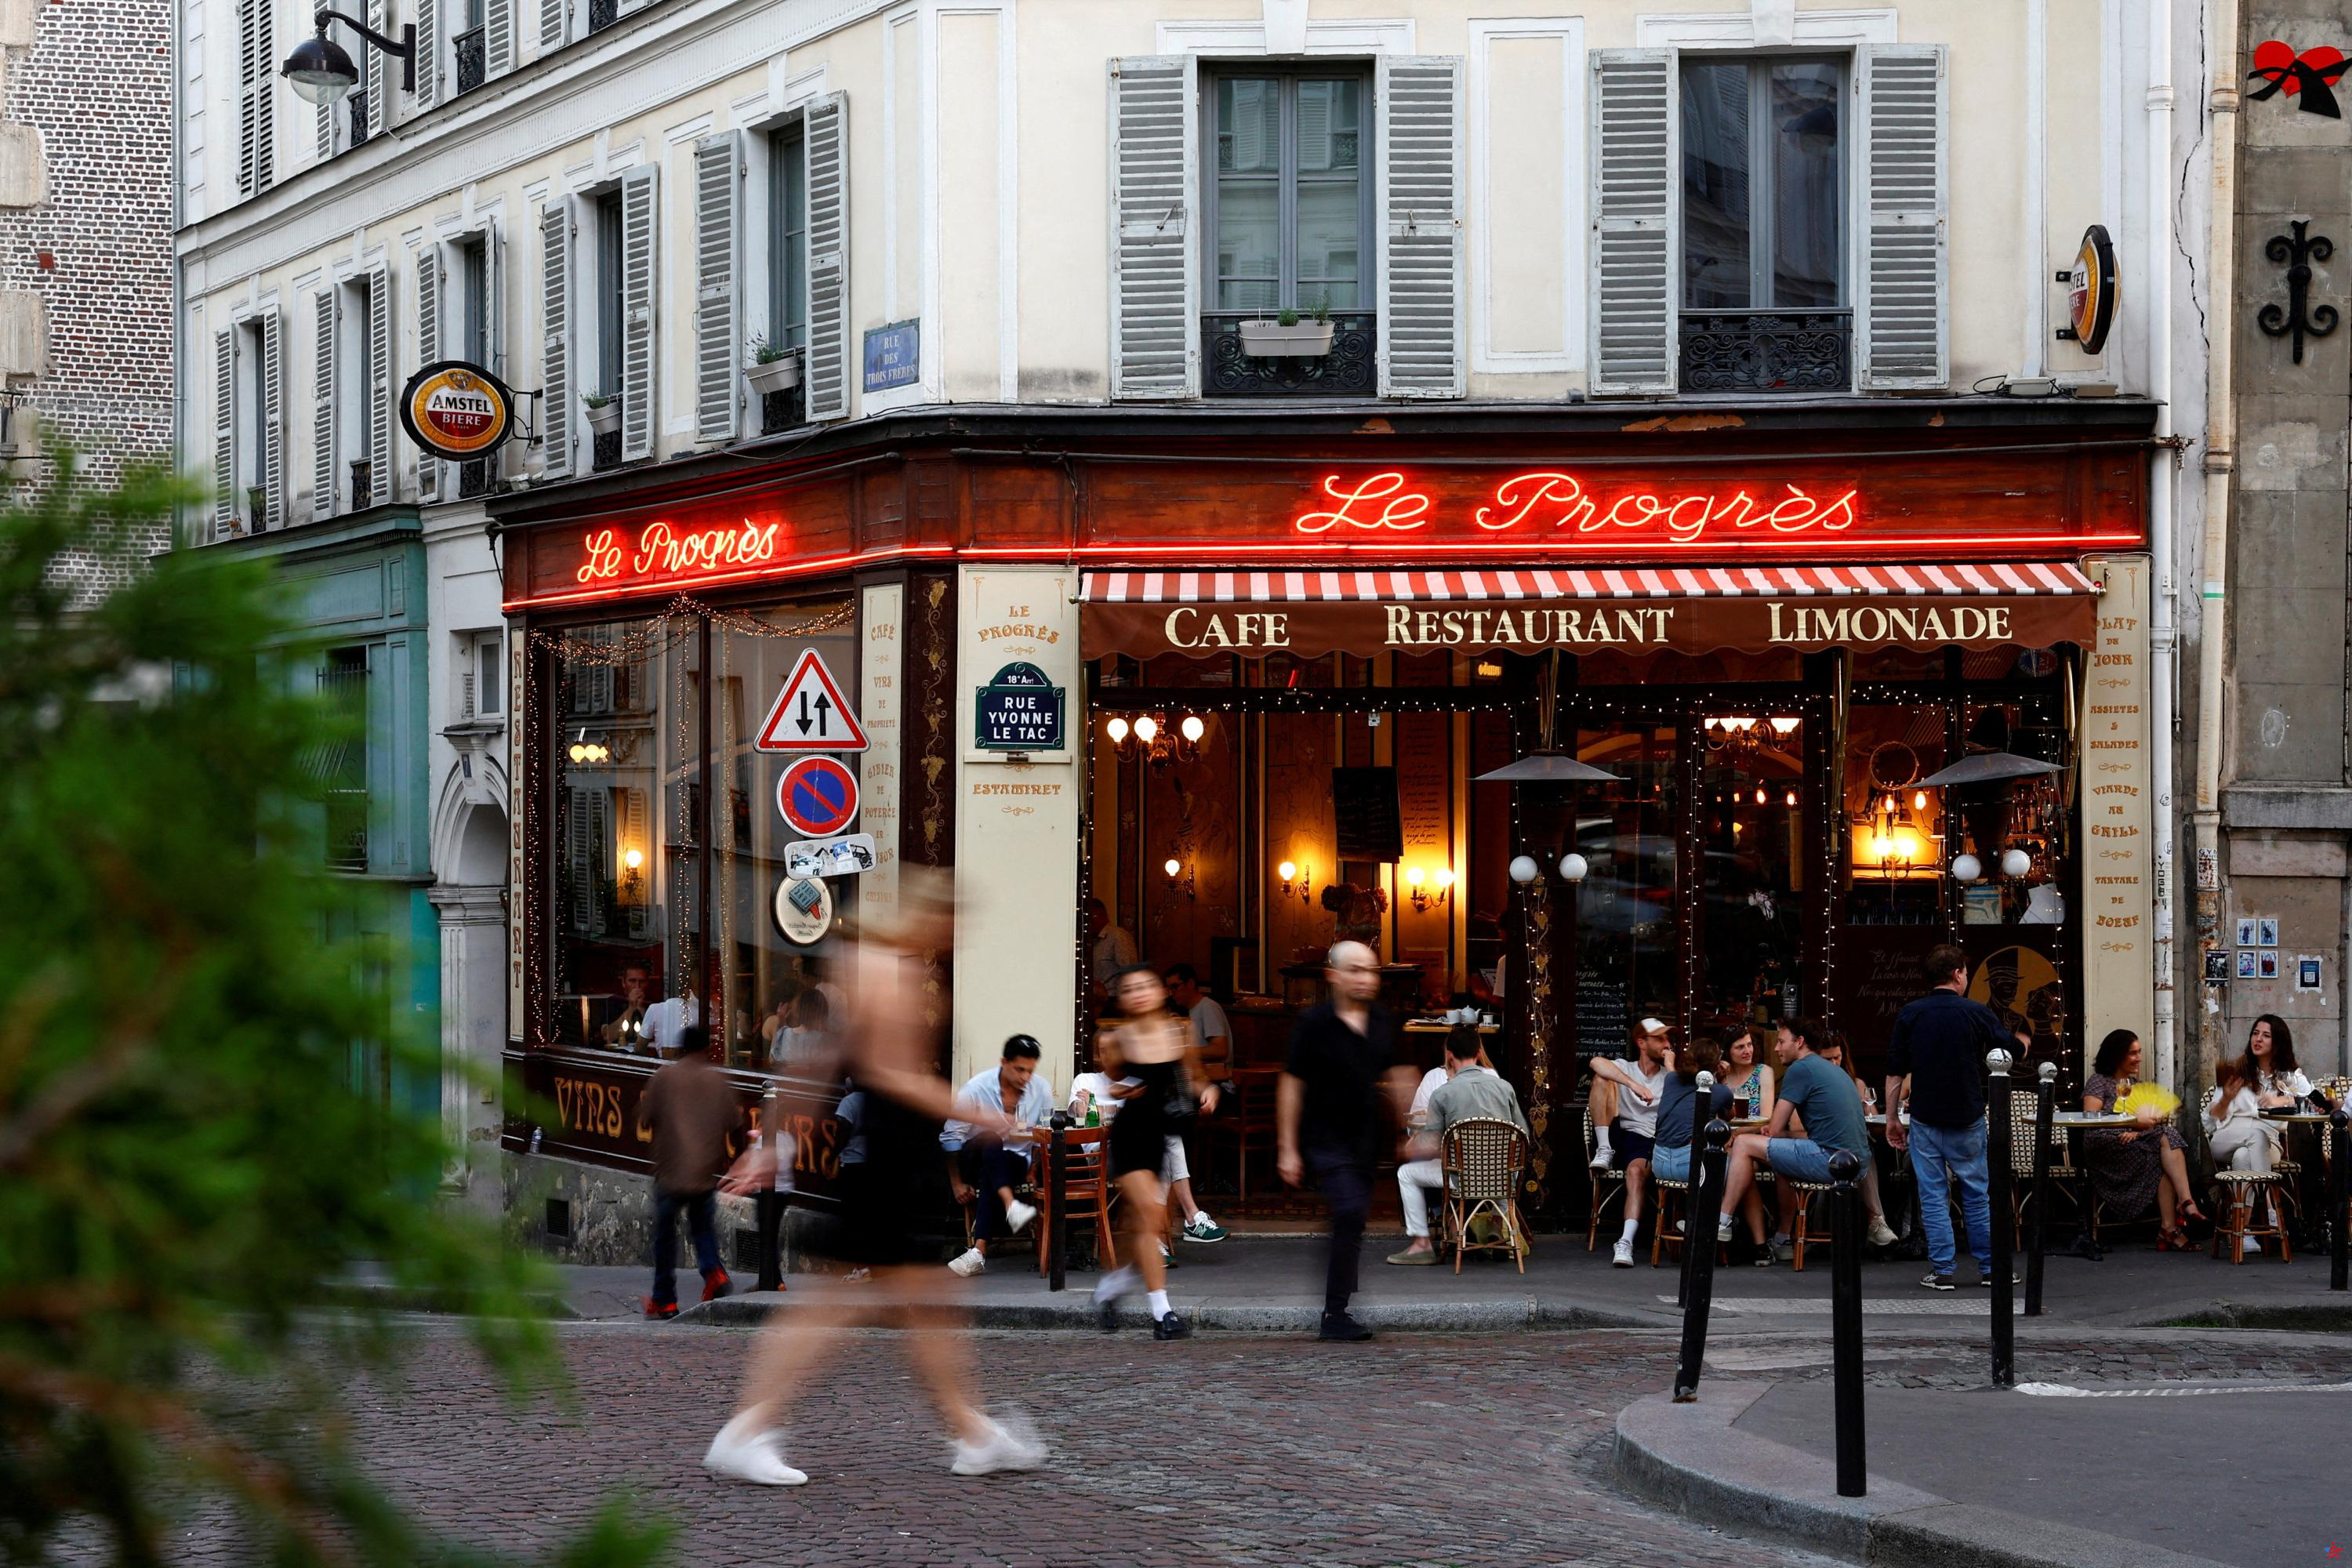 Más de 230 restaurantes parisinos ofrecen sus menús a mitad de precio hasta finales de marzo